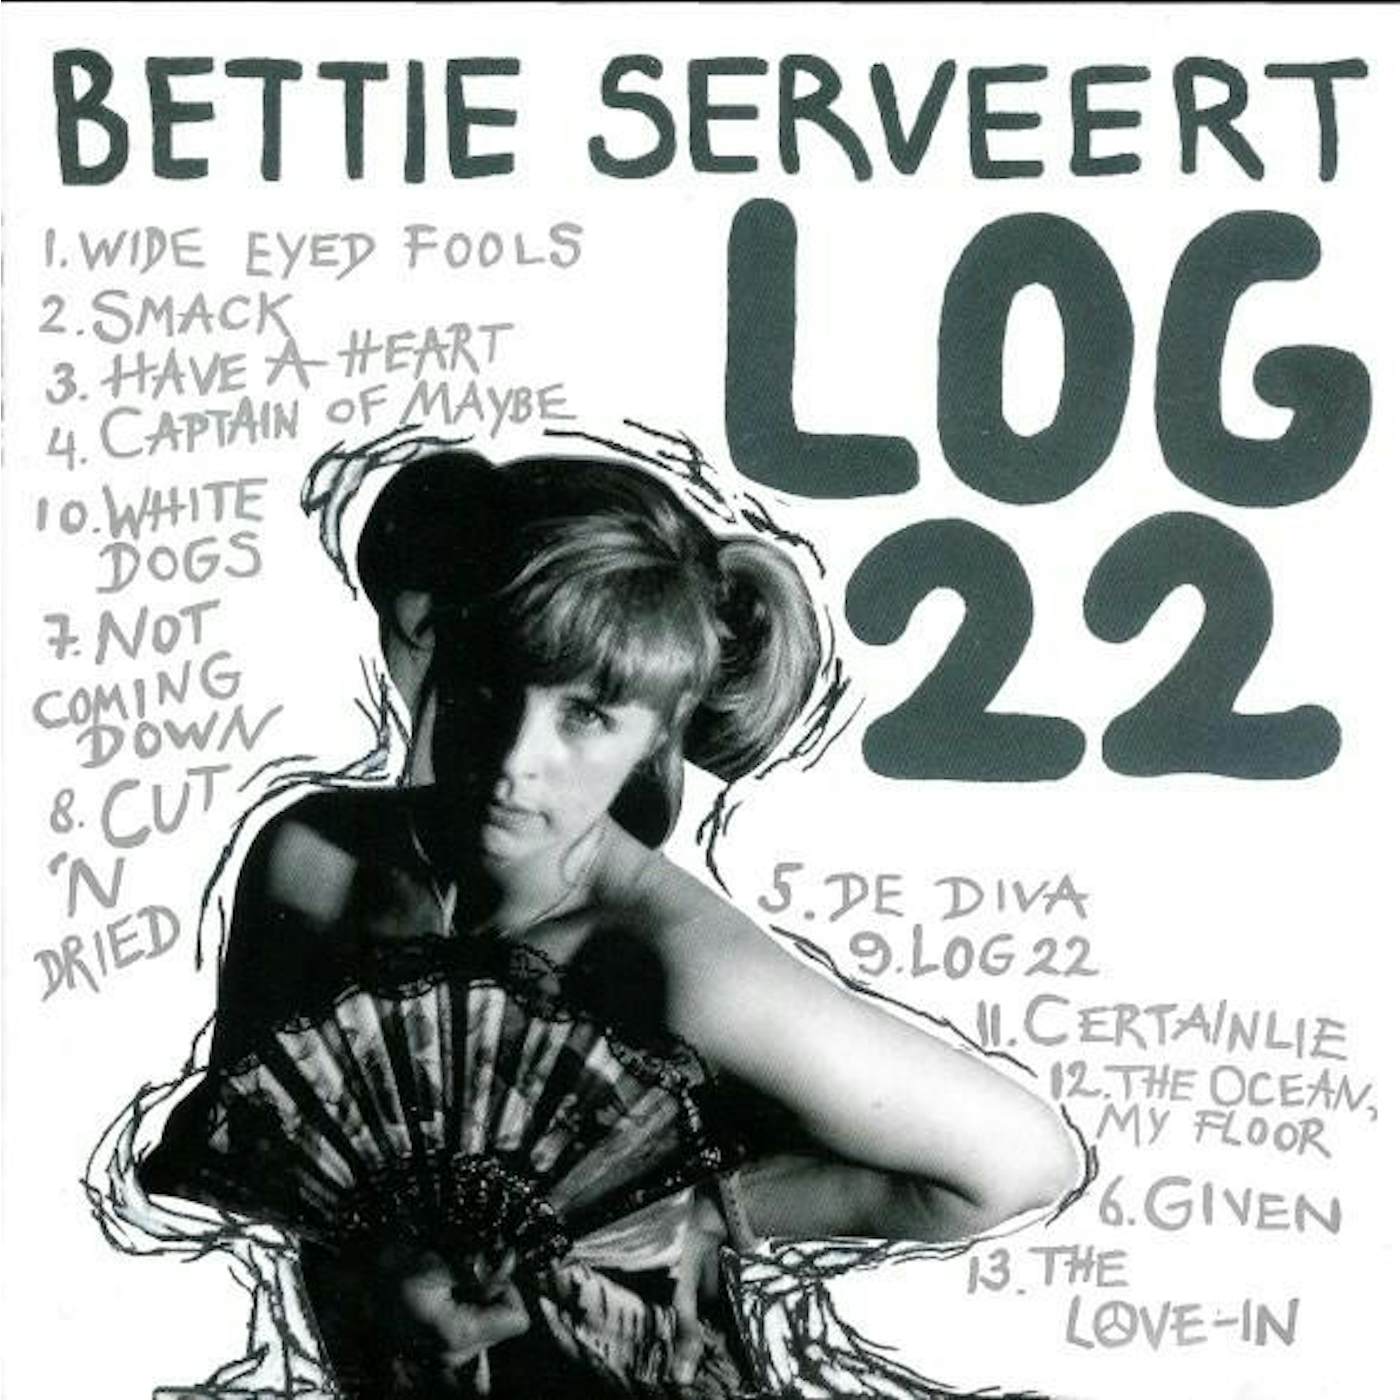 Bettie Serveert LOG 22 CD